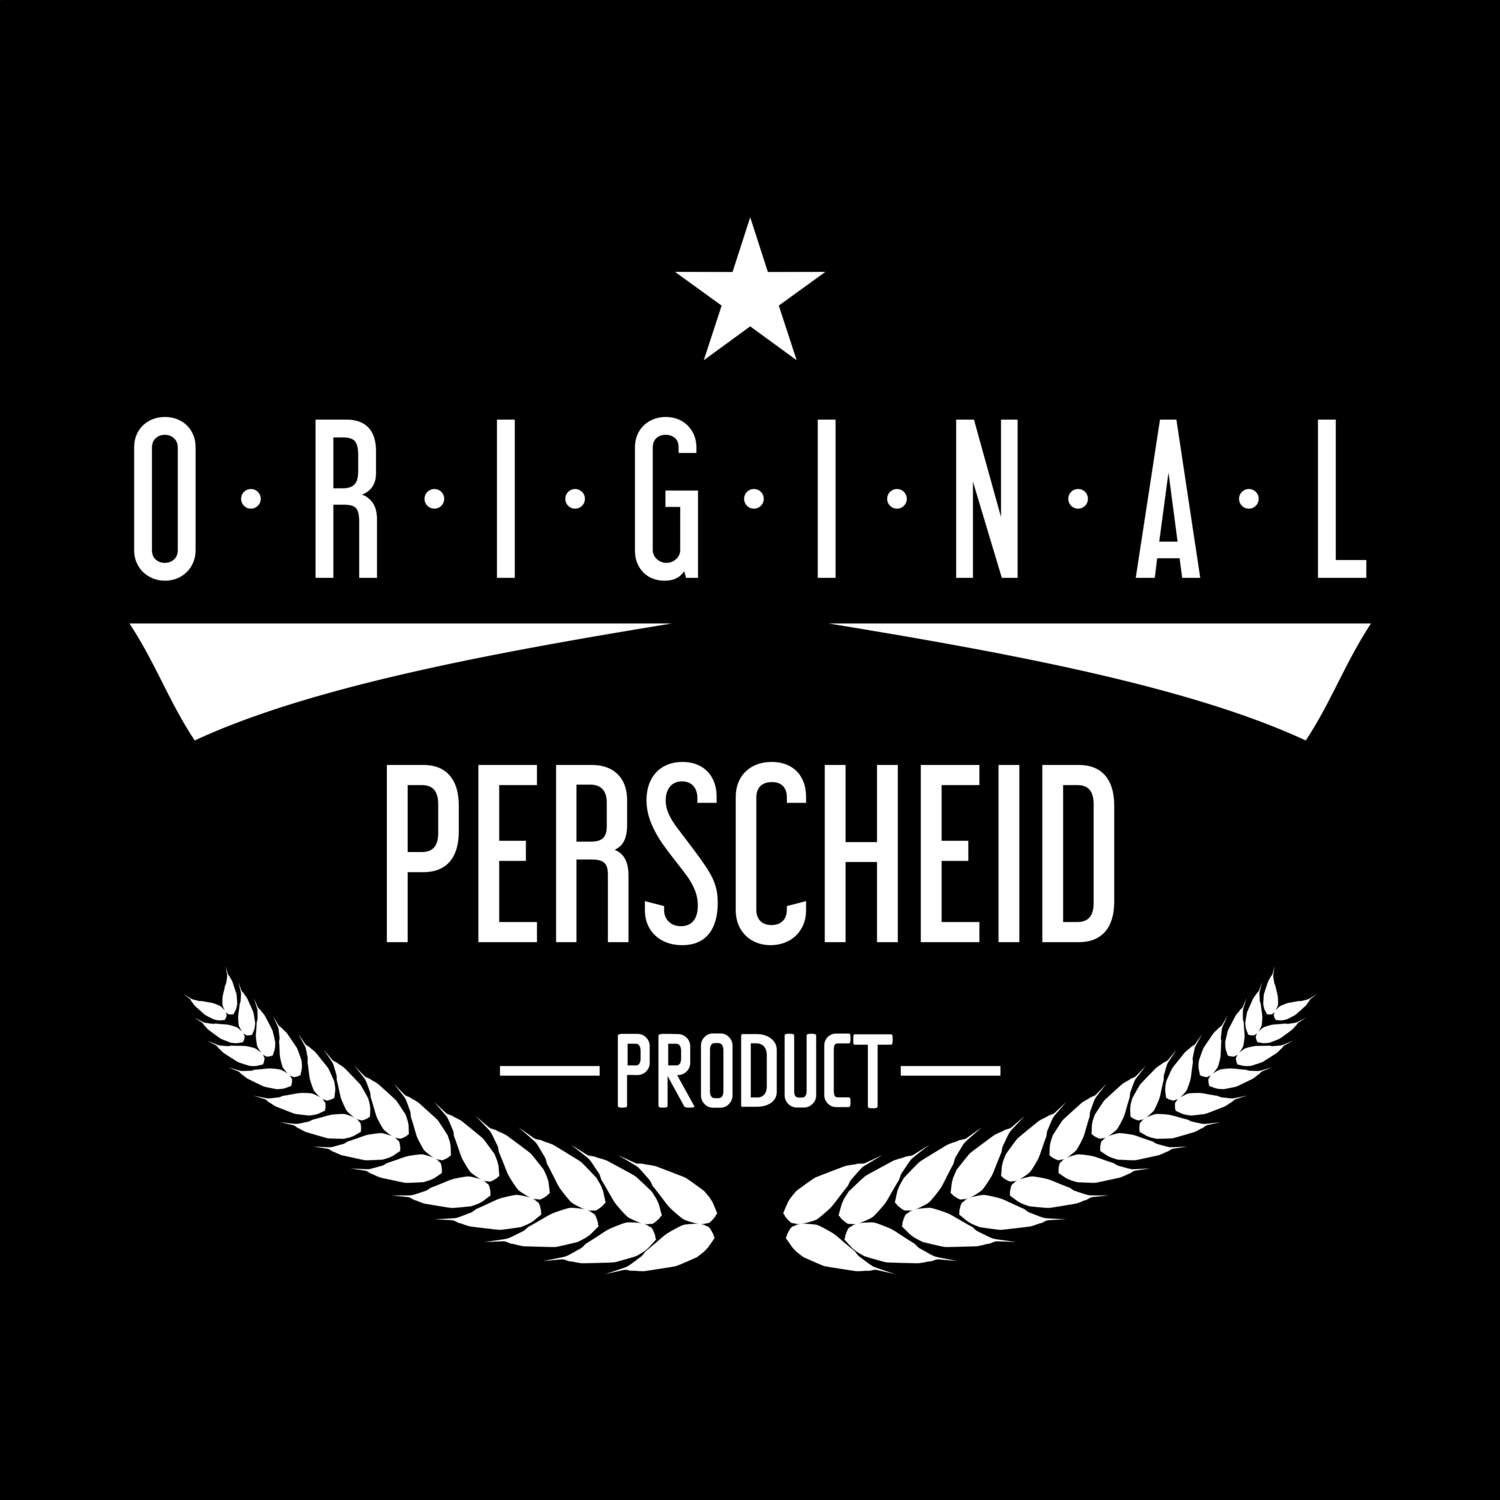 Perscheid T-Shirt »Original Product«